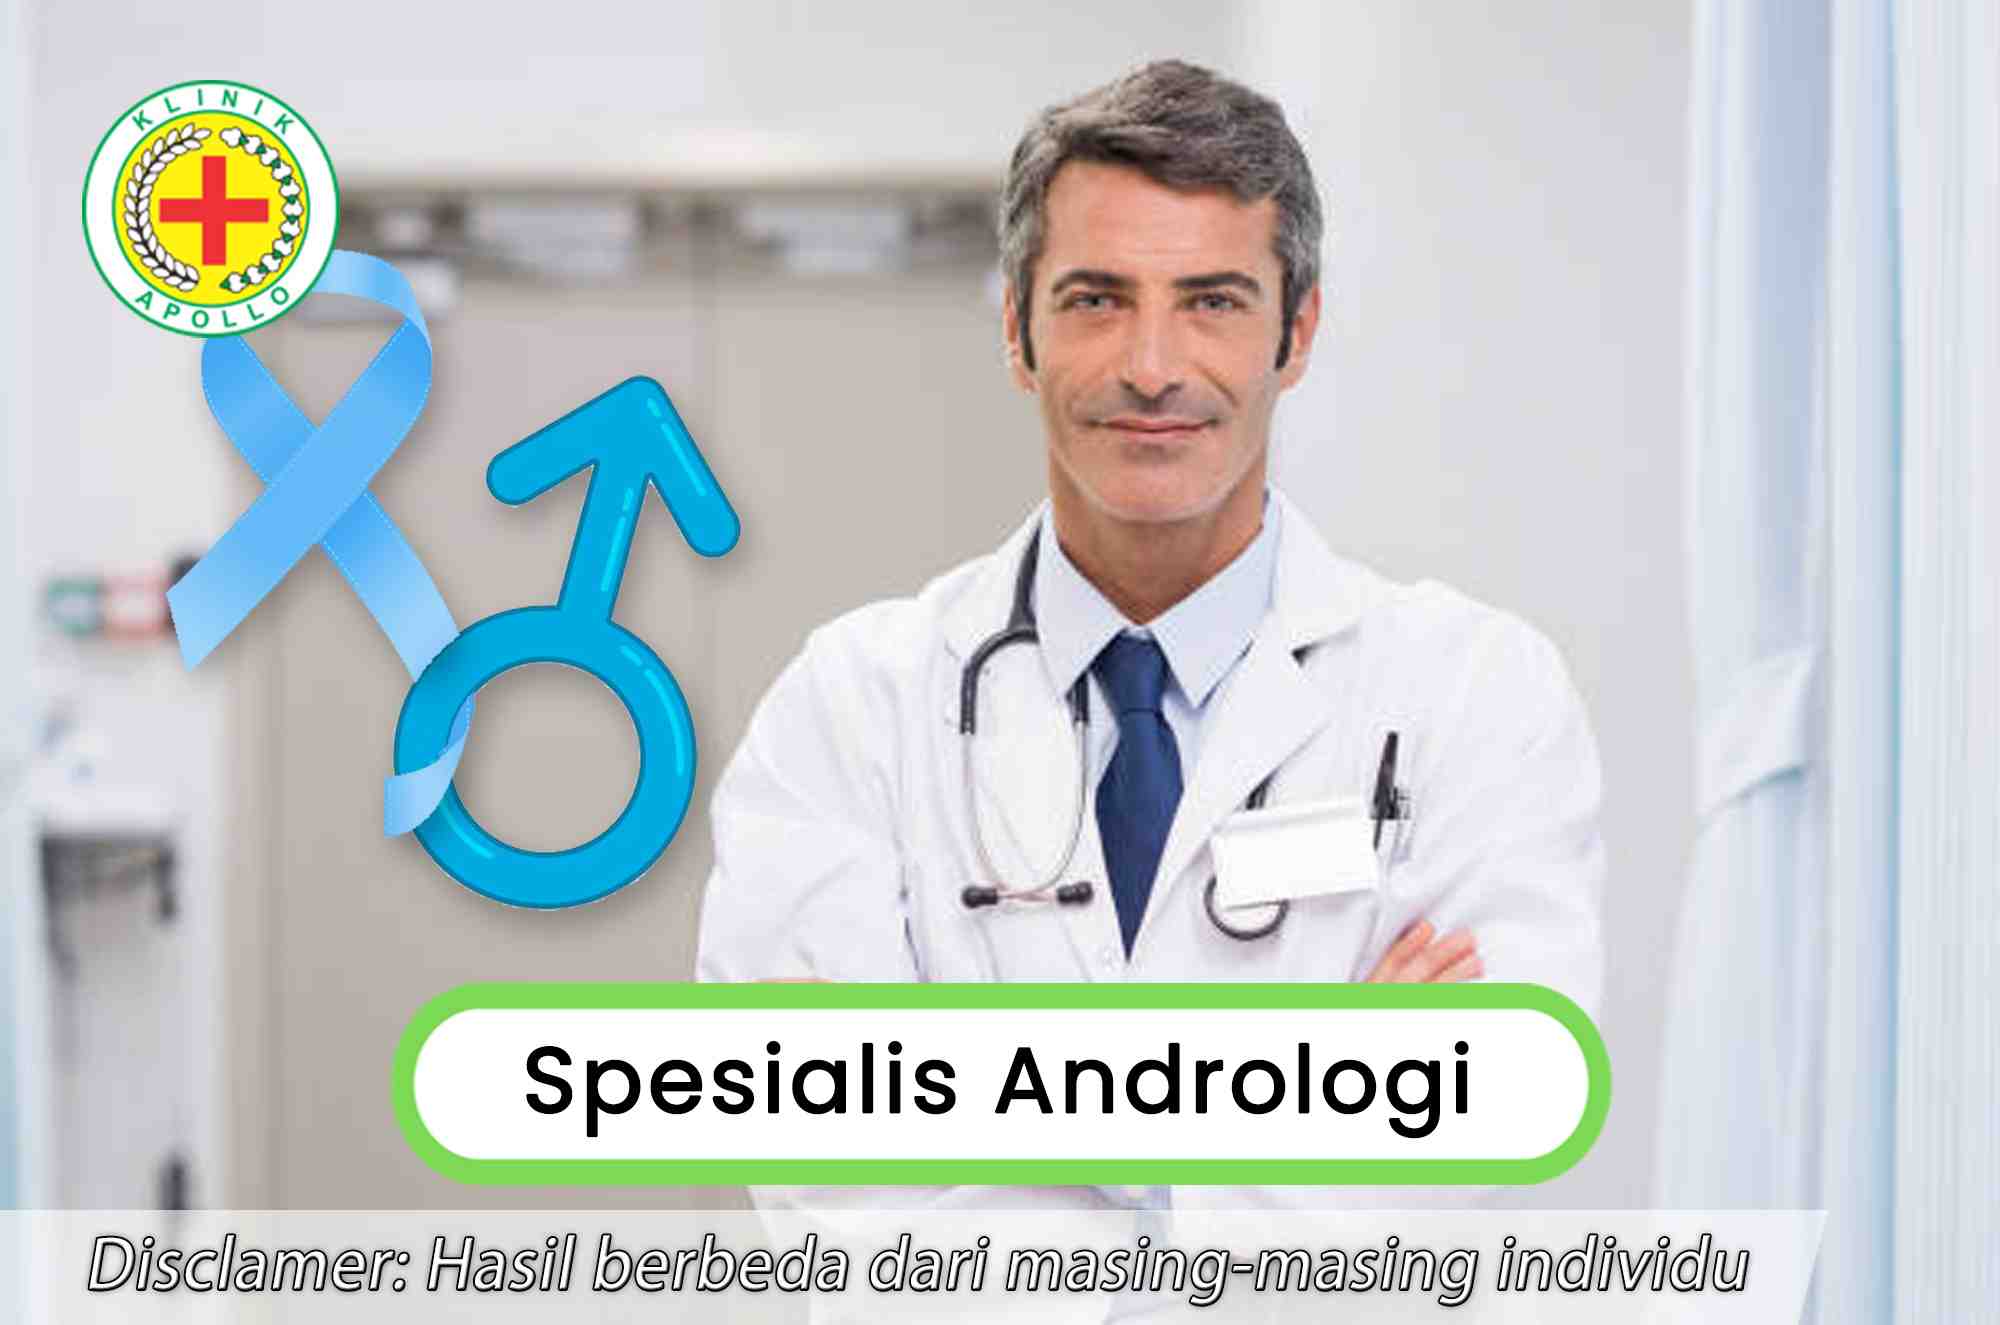 Memahami Dokter Spesialis Andrologi secara Mendalam